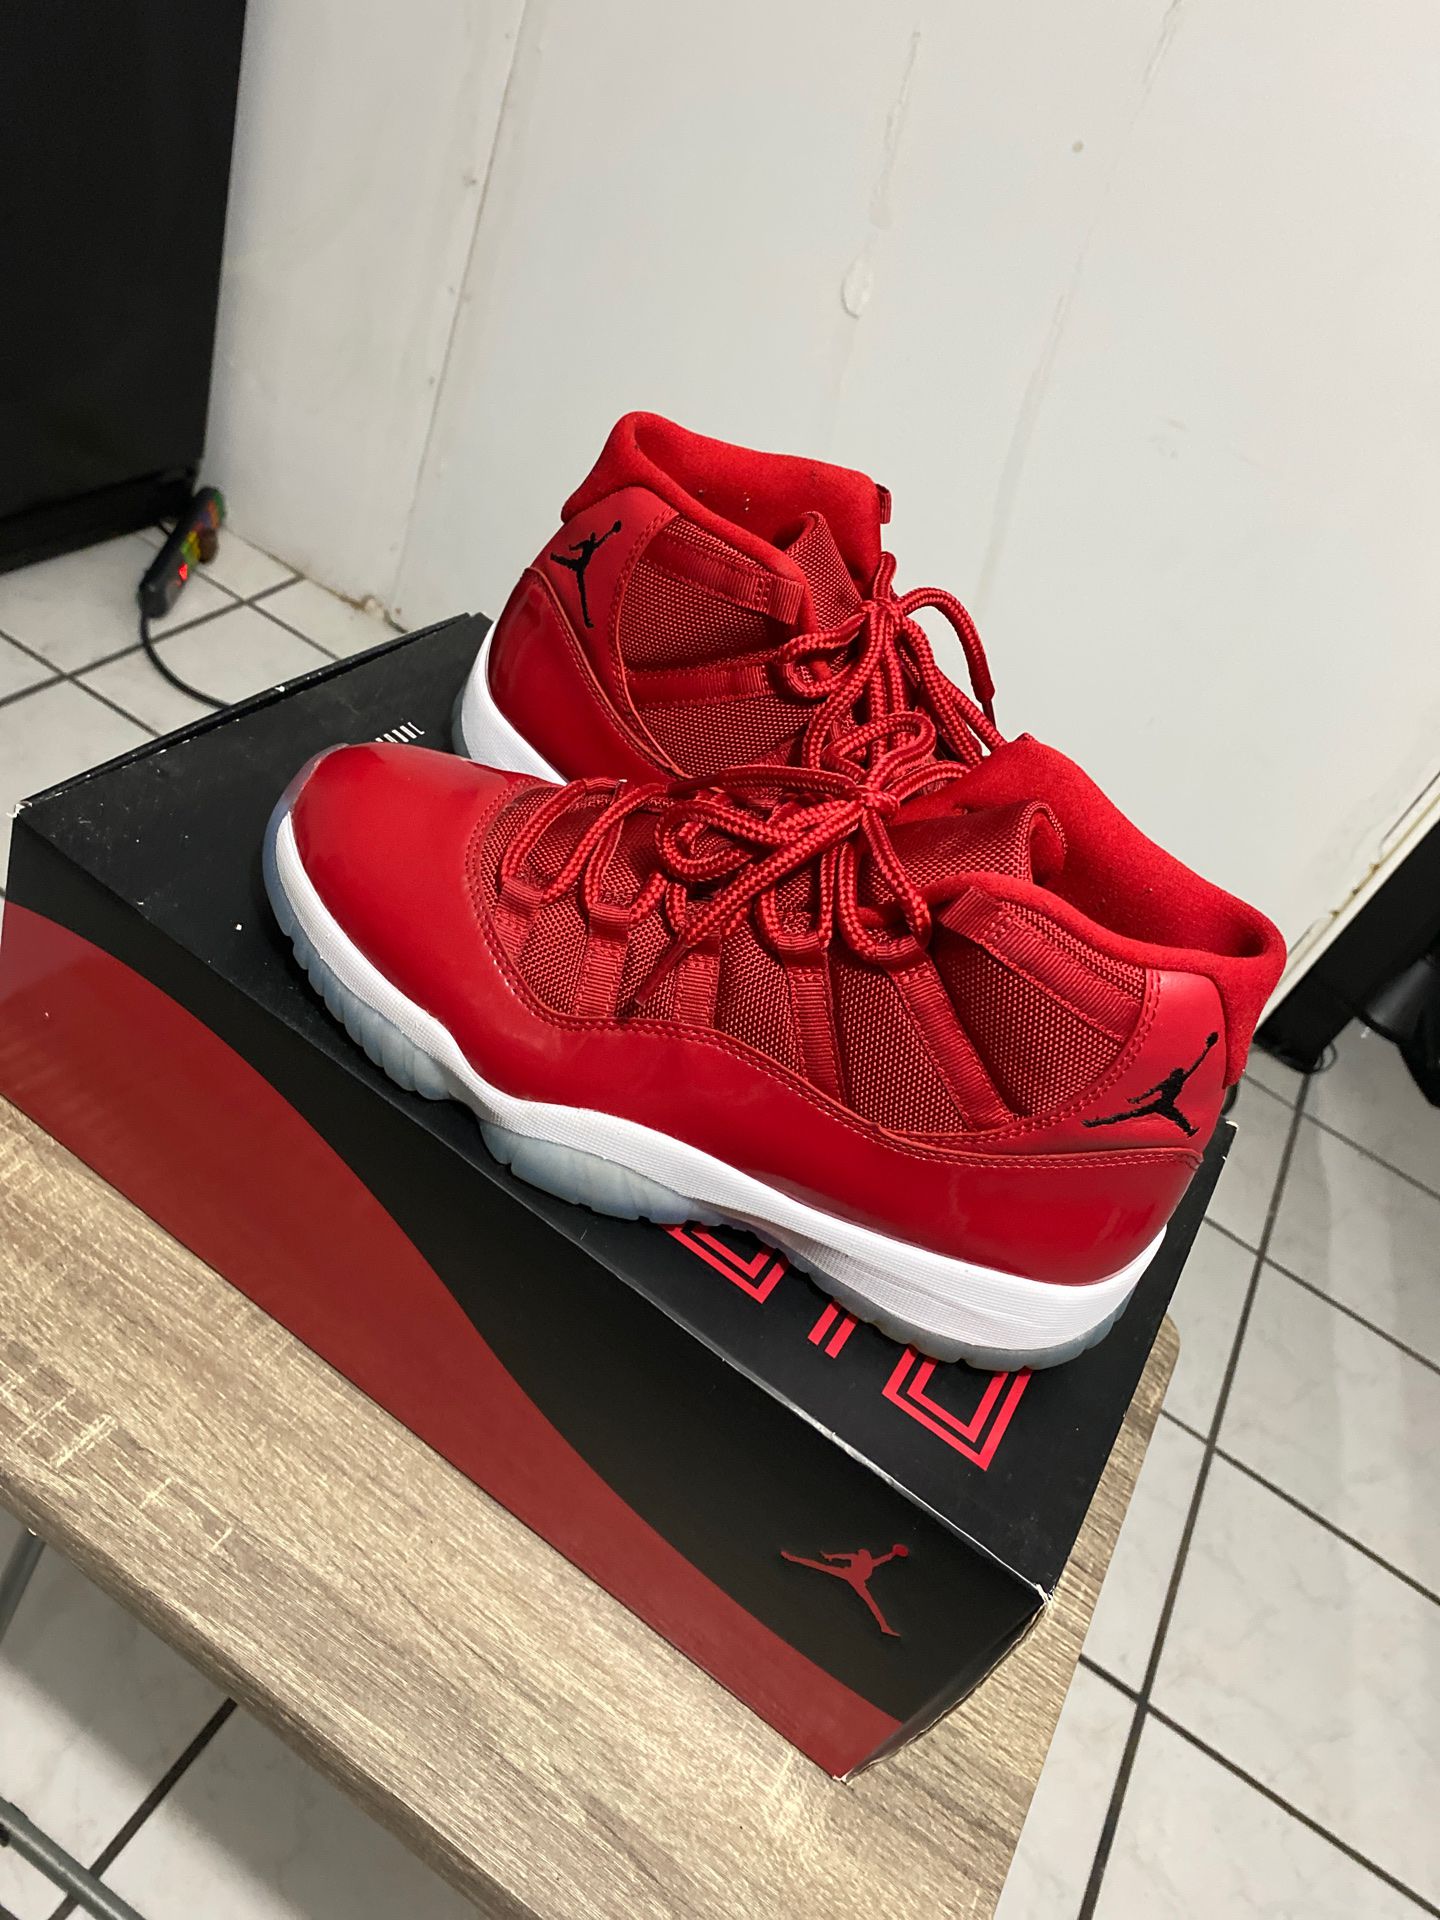 Jordan 11 size 10